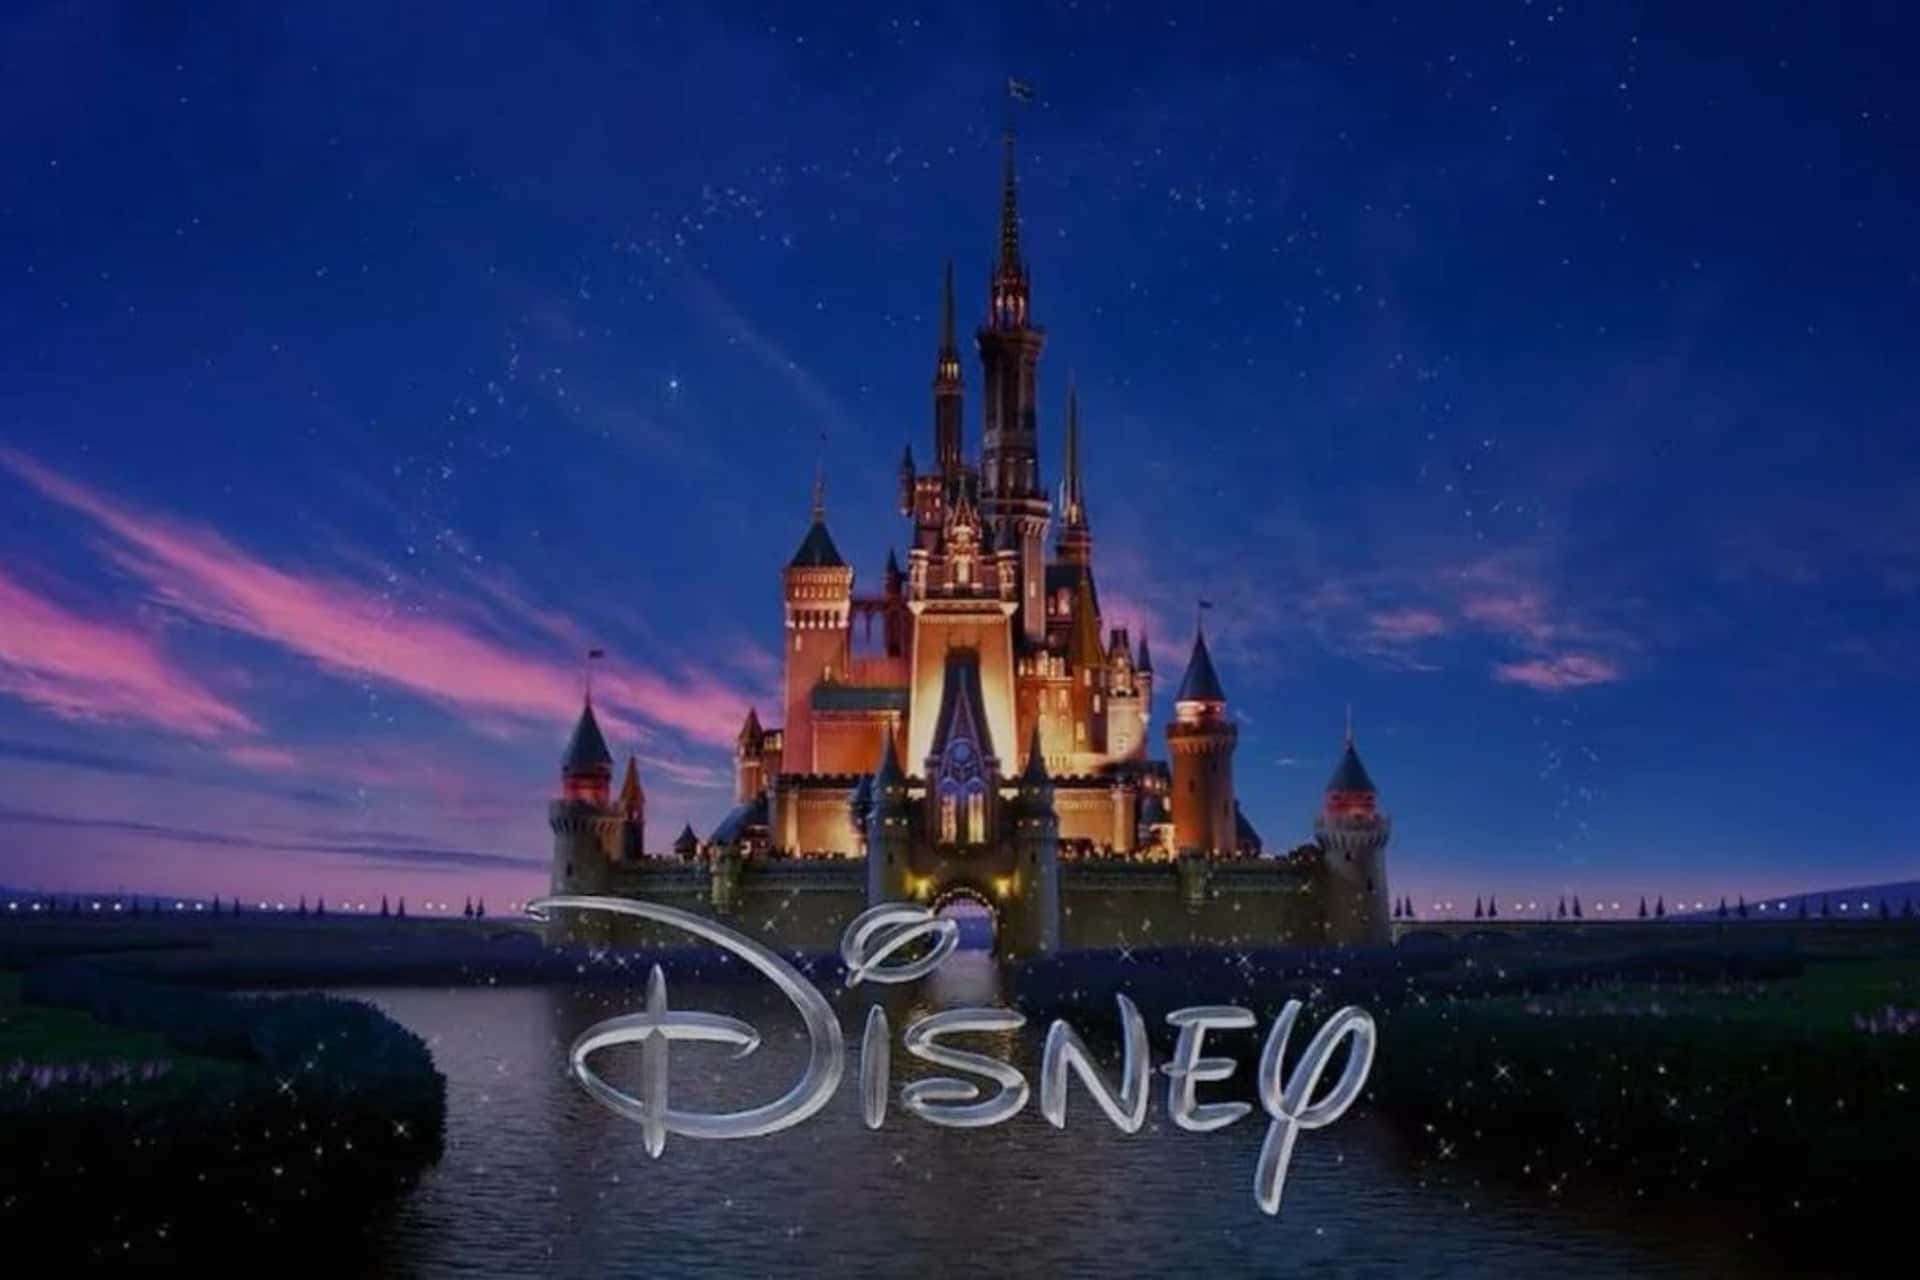 Disney Castle Logoat Dusk Wallpaper